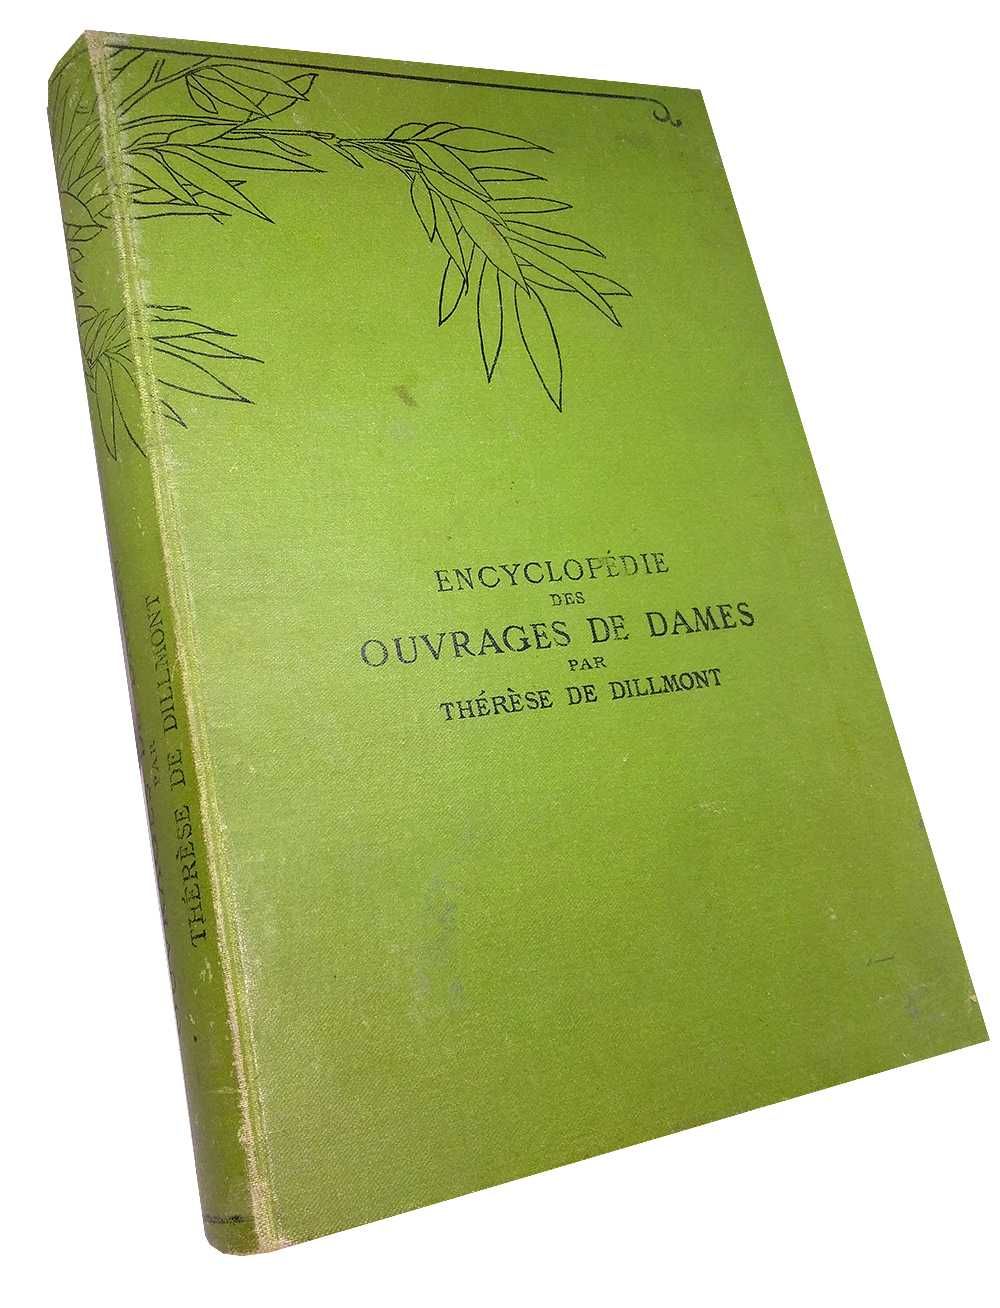 Encyclopedie des ouvrages de dames (En. de broderie) - Th. Dillmont